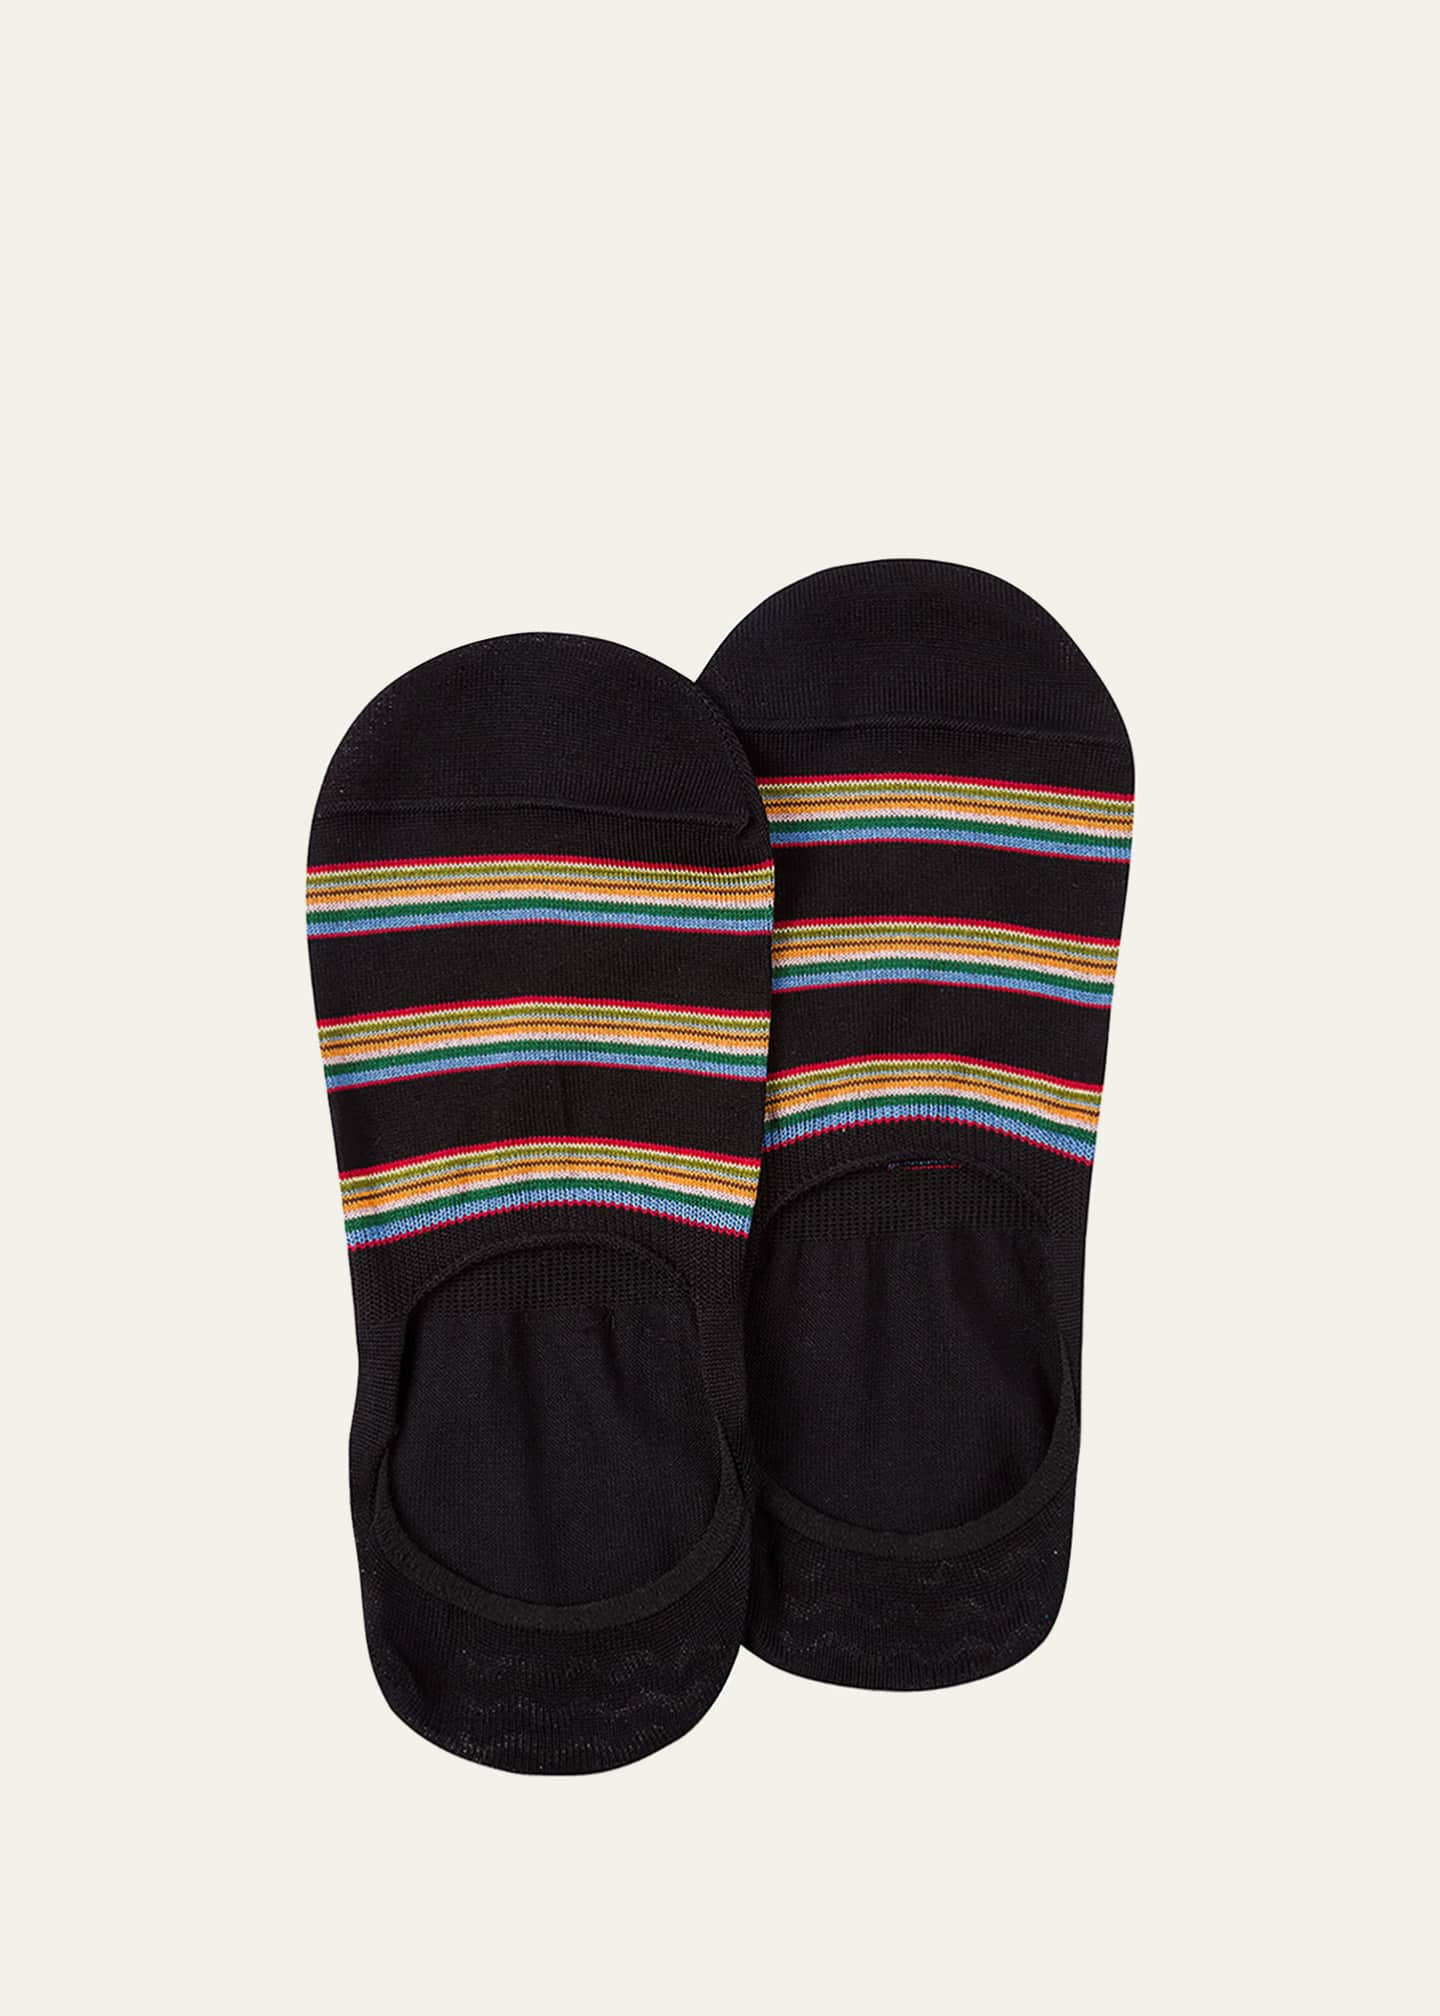 Paul Smith Men's Multiblock No-Show Socks w/ Heel Grips - Bergdorf Goodman